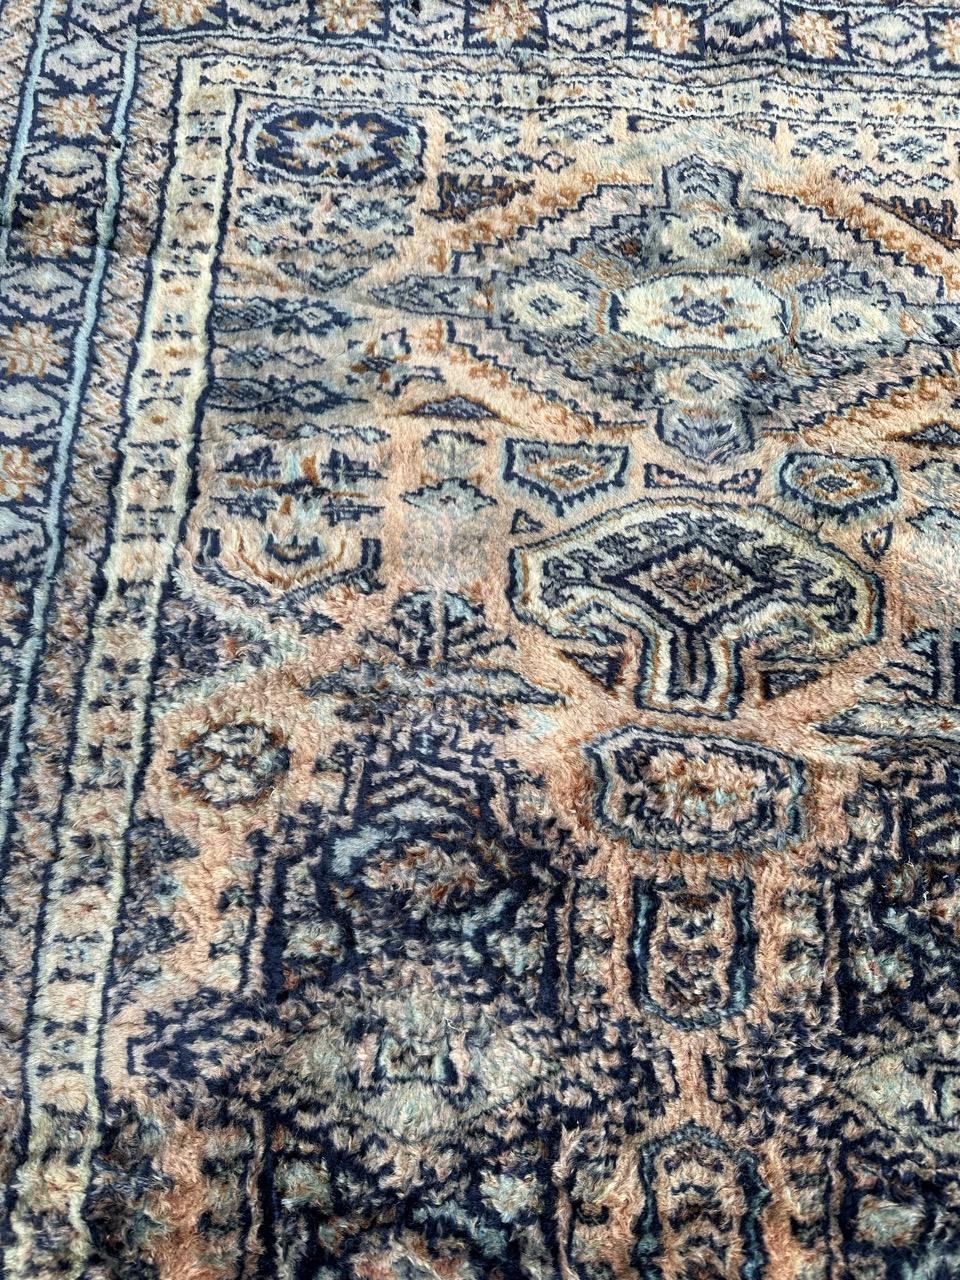 Magnifique tapis pakistanais de la fin du 20e siècle avec un design tribal turkmène et de belles couleurs avec du bleu gris, de l'orange, du bleu et du blanc. Entièrement noué à la main avec de la laine sur une base de coton.

✨✨✨
